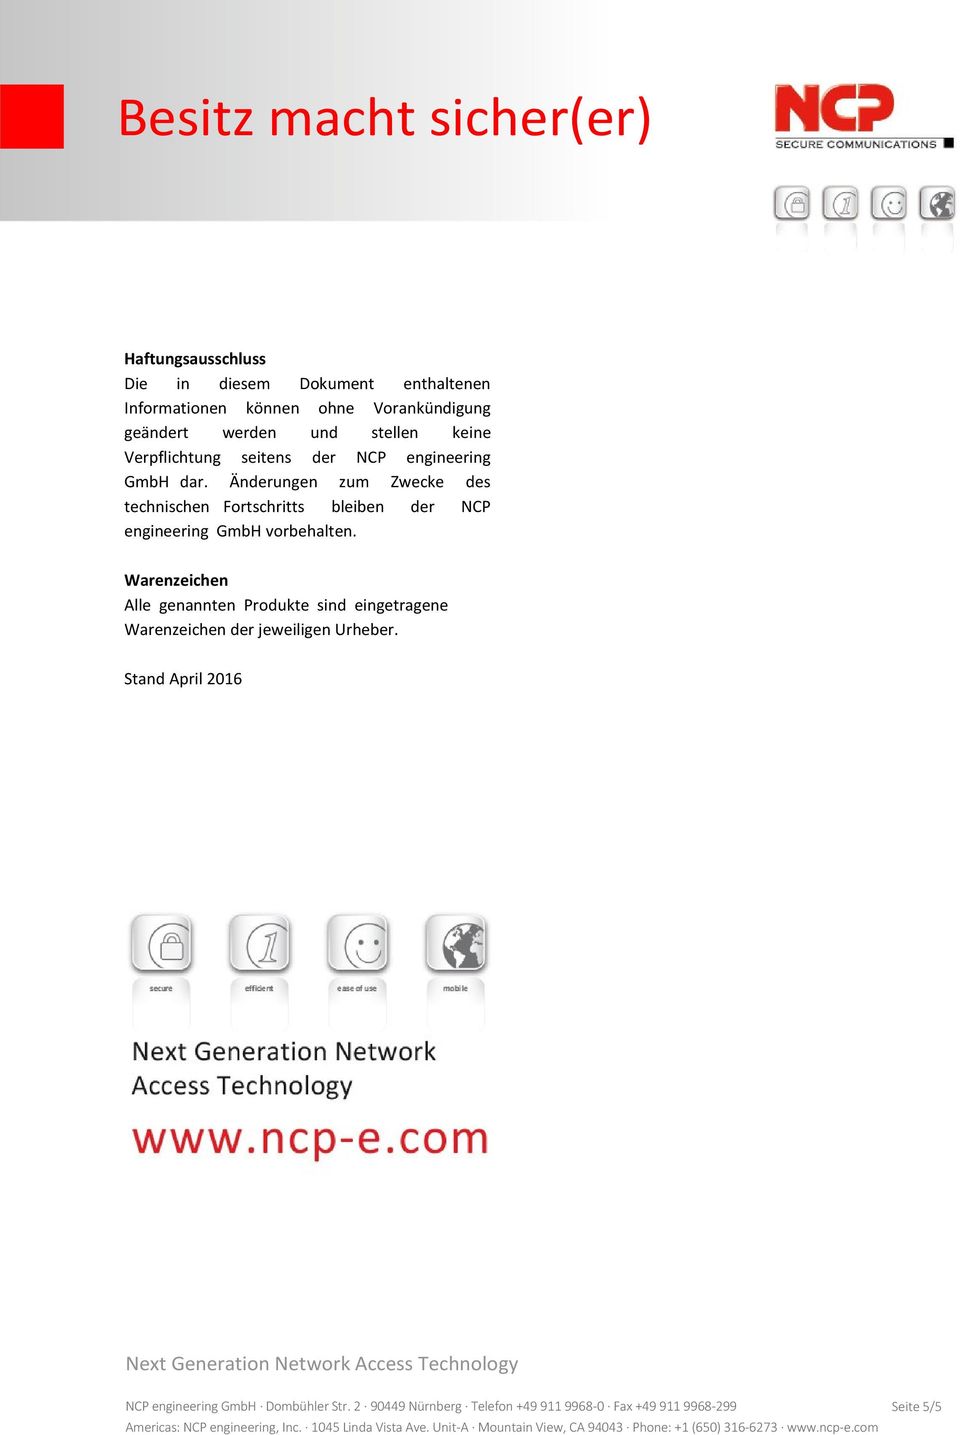 Änderungen zum Zwecke des technischen Fortschritts bleiben der NCP engineering GmbH vorbehalten.